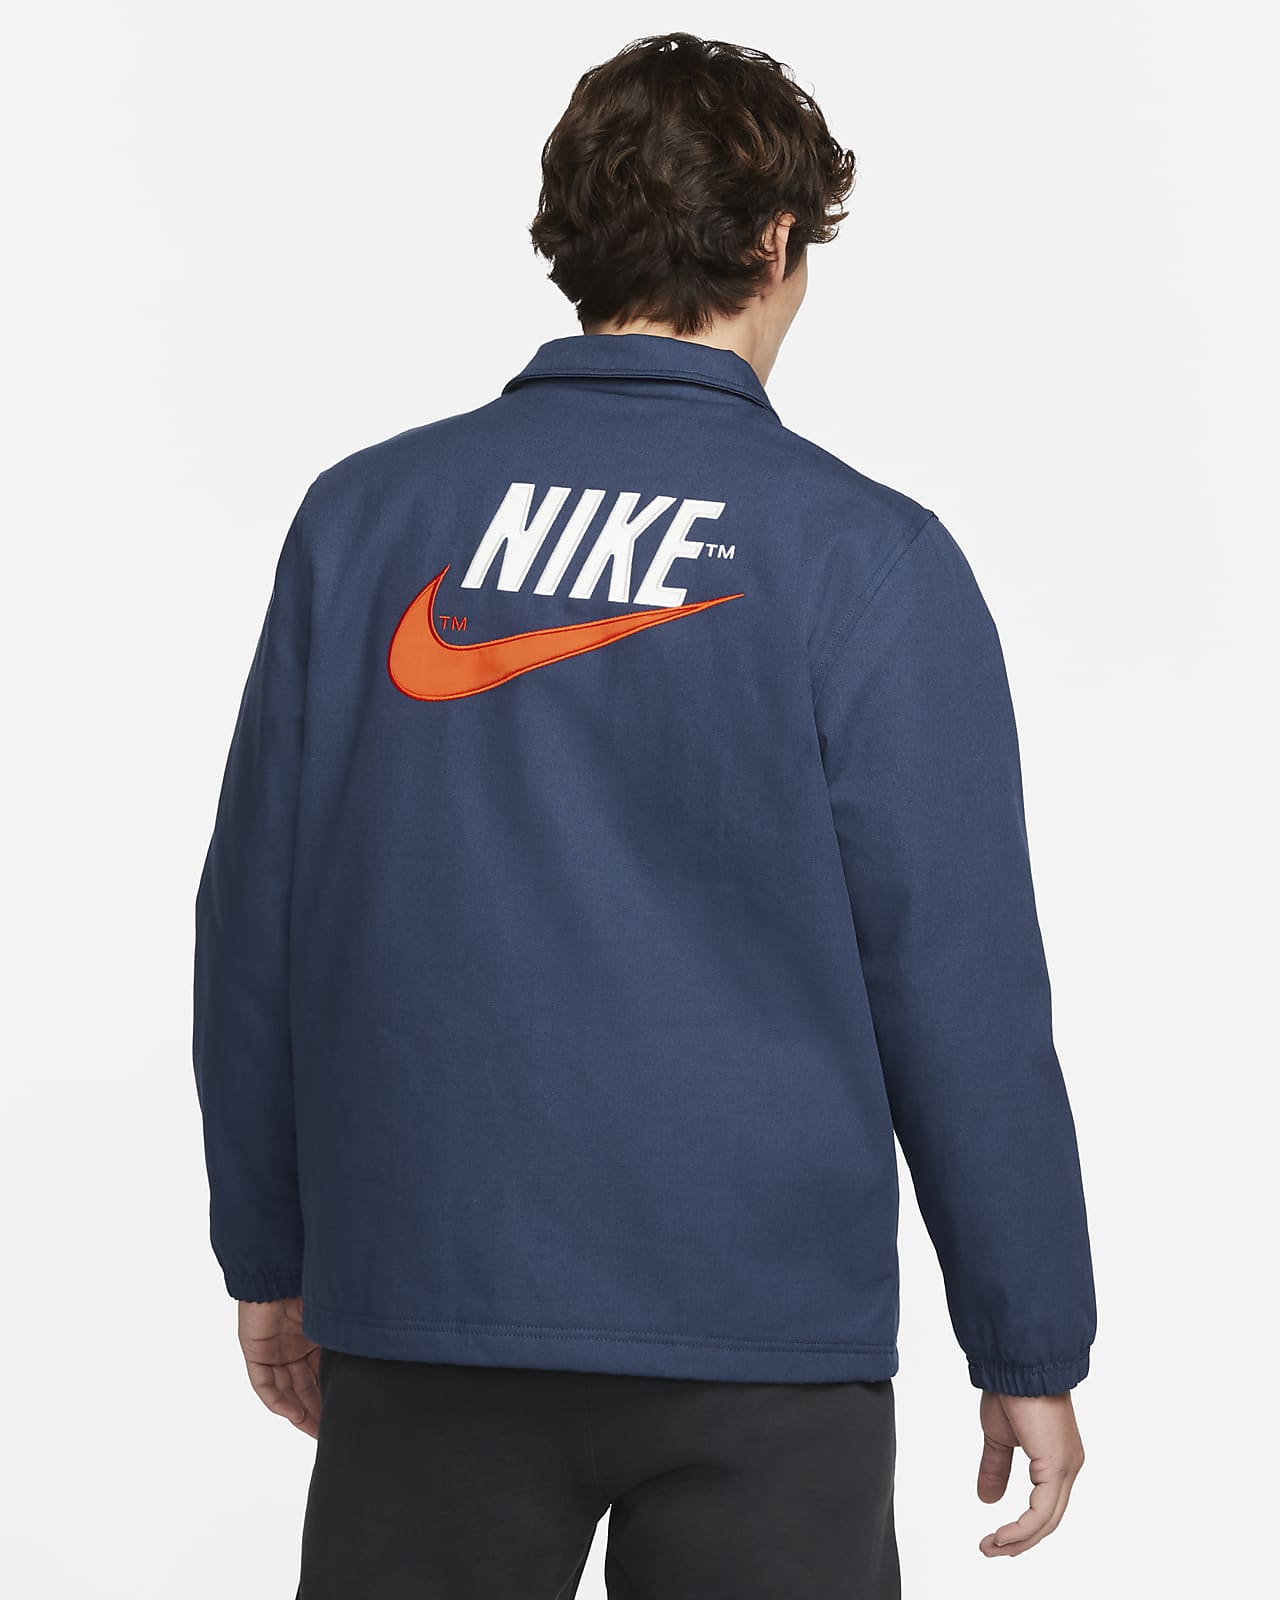 Nike Sportswear Men's Jacket. Nike